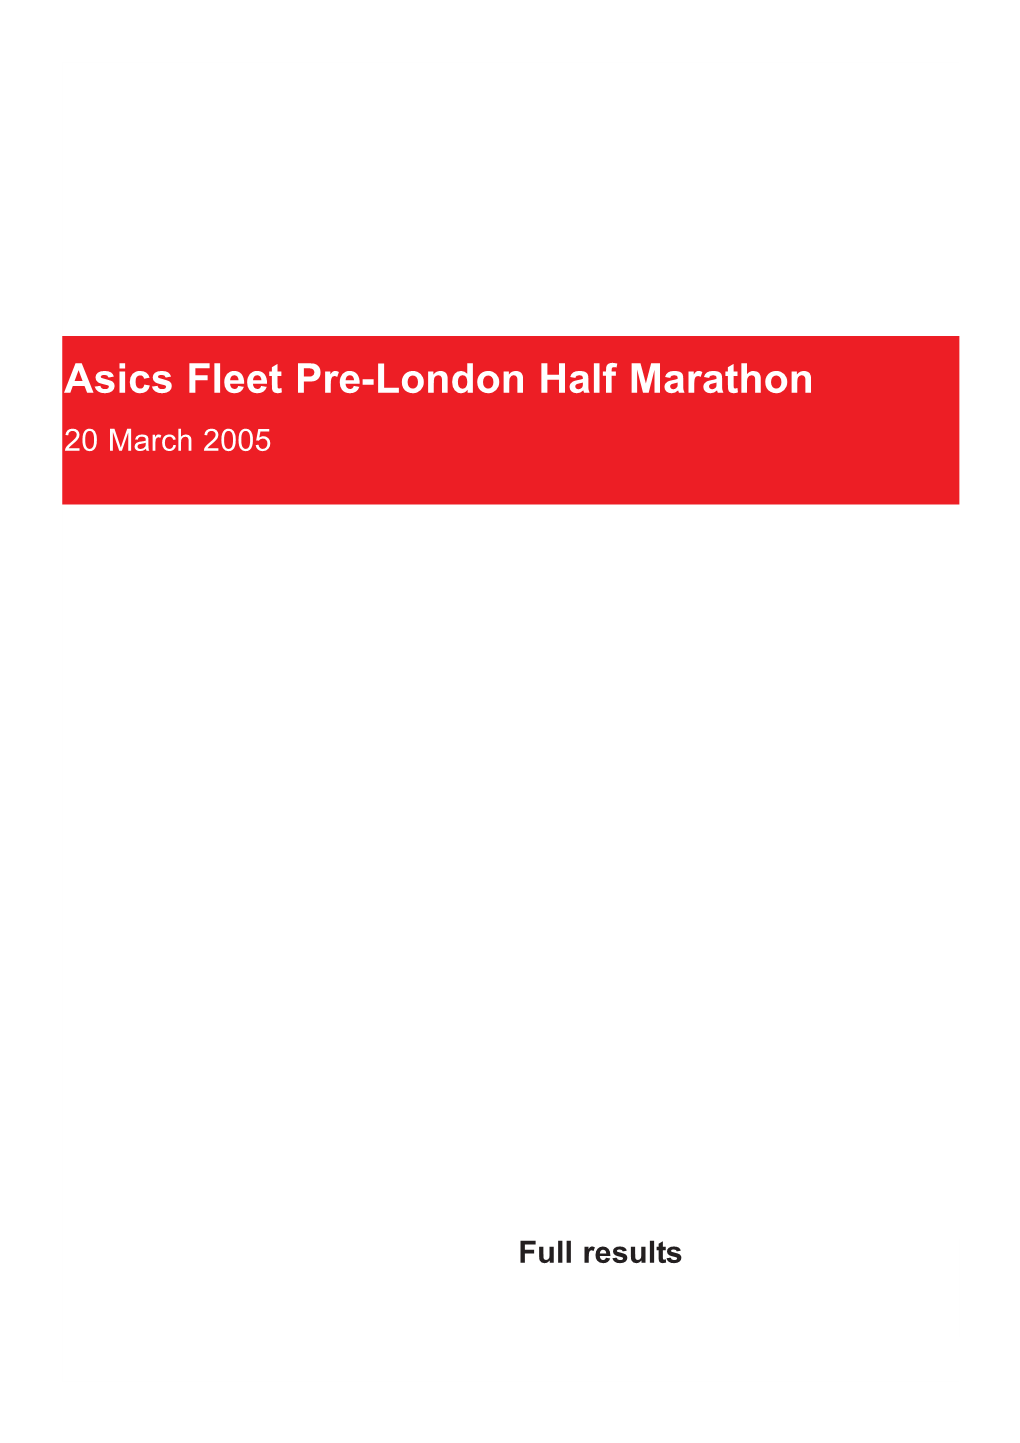 The Fleet Half Marathon – 20 March 2005